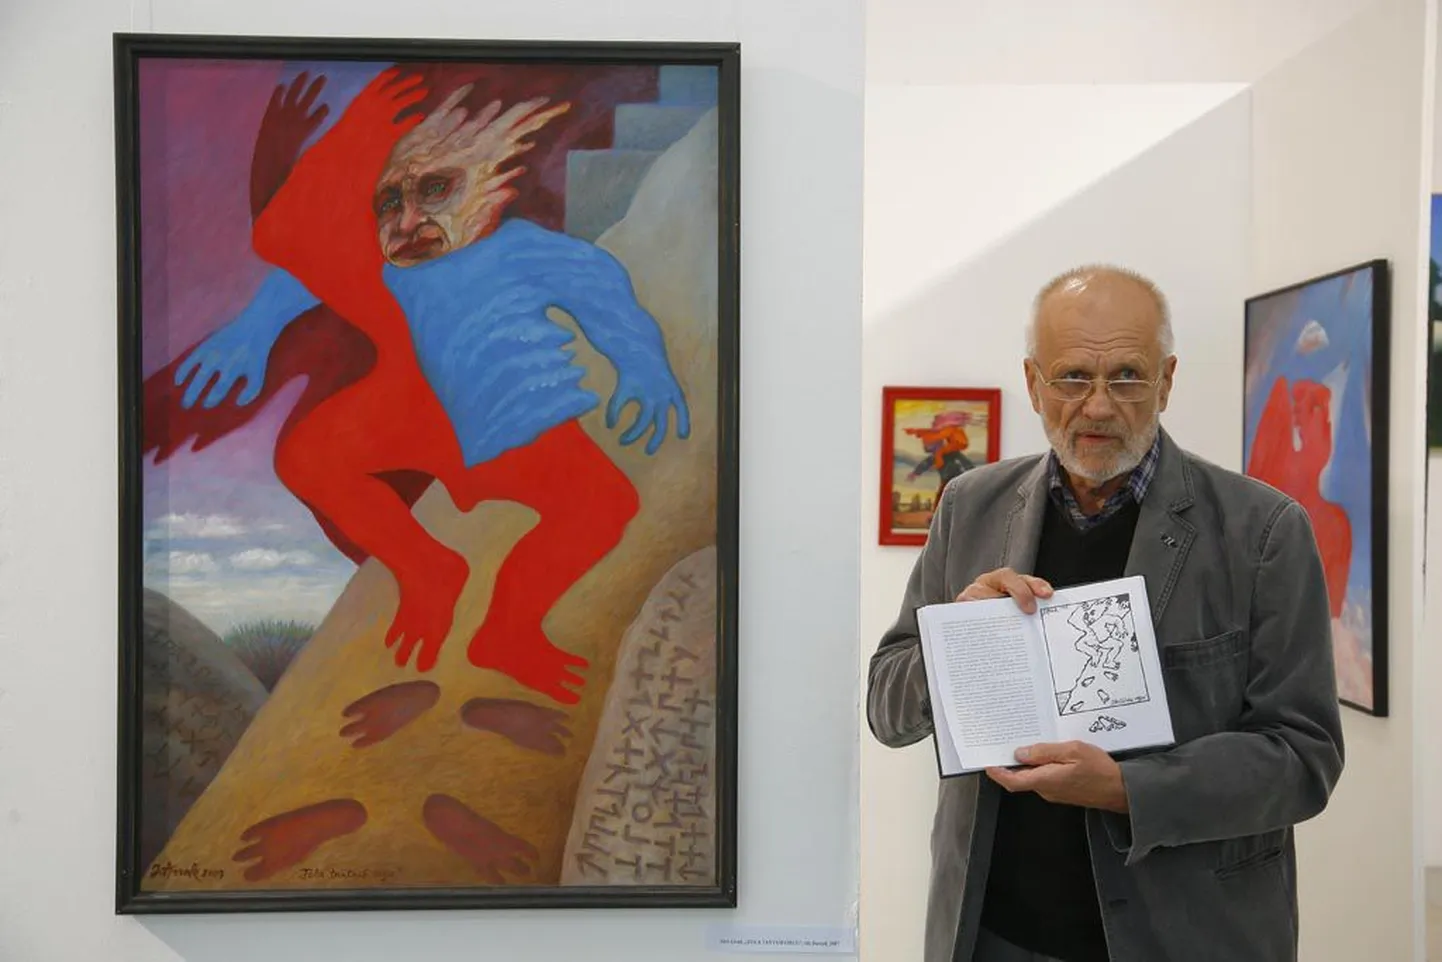 Uue kunsti muuseumis toimunud näituse avamisel lugesid katkeid oma raamatutest tuntud kunstnikud Jüri Arrak (pildil), Raul Meel ja Toomas Vint.